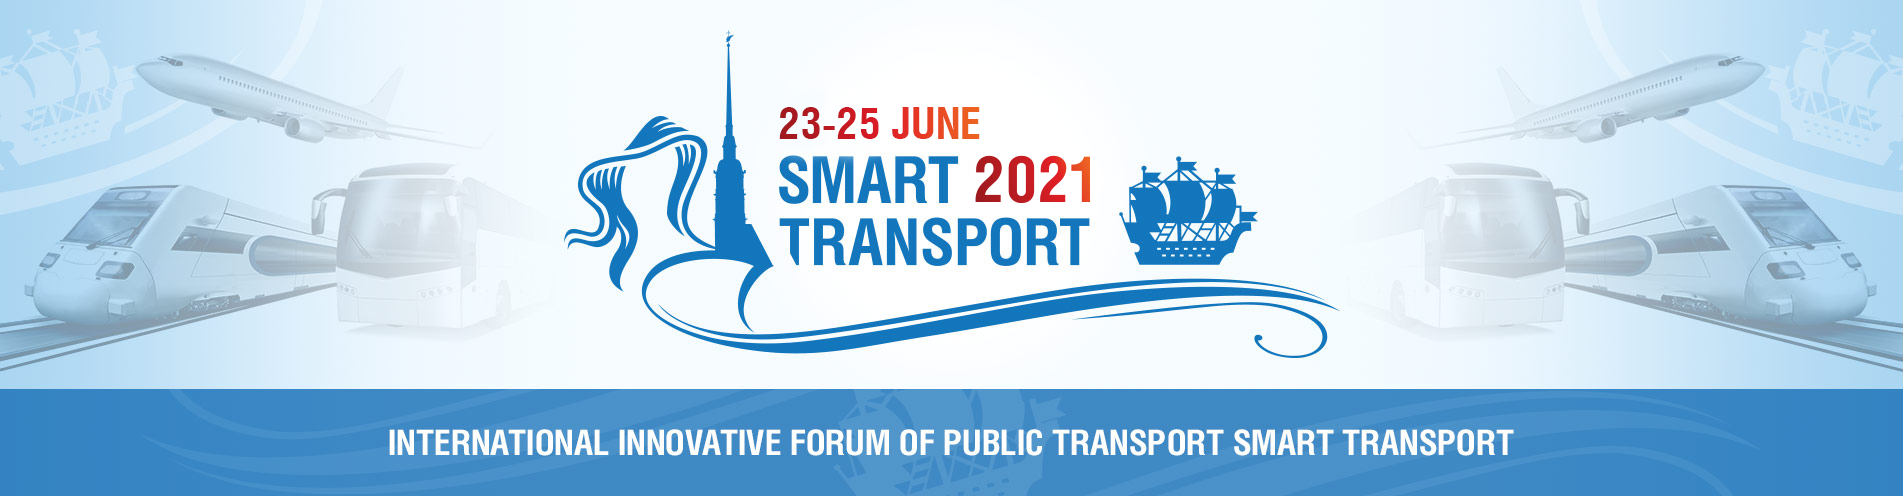 International Innovative Forum of Public Transport Smart TRANSPORT